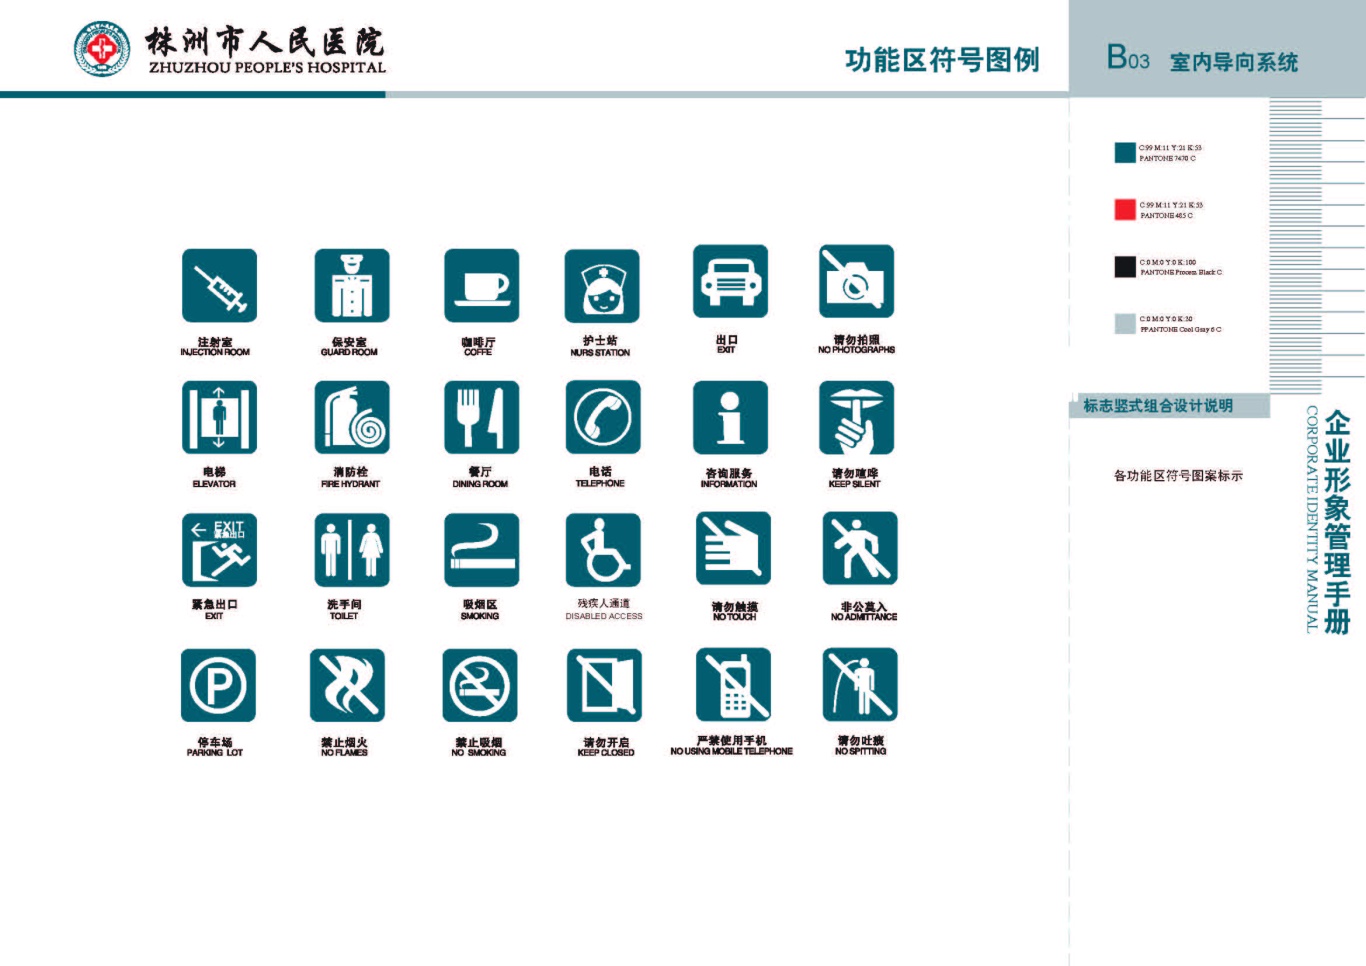 株洲市人民医院vis手册设计项目图13